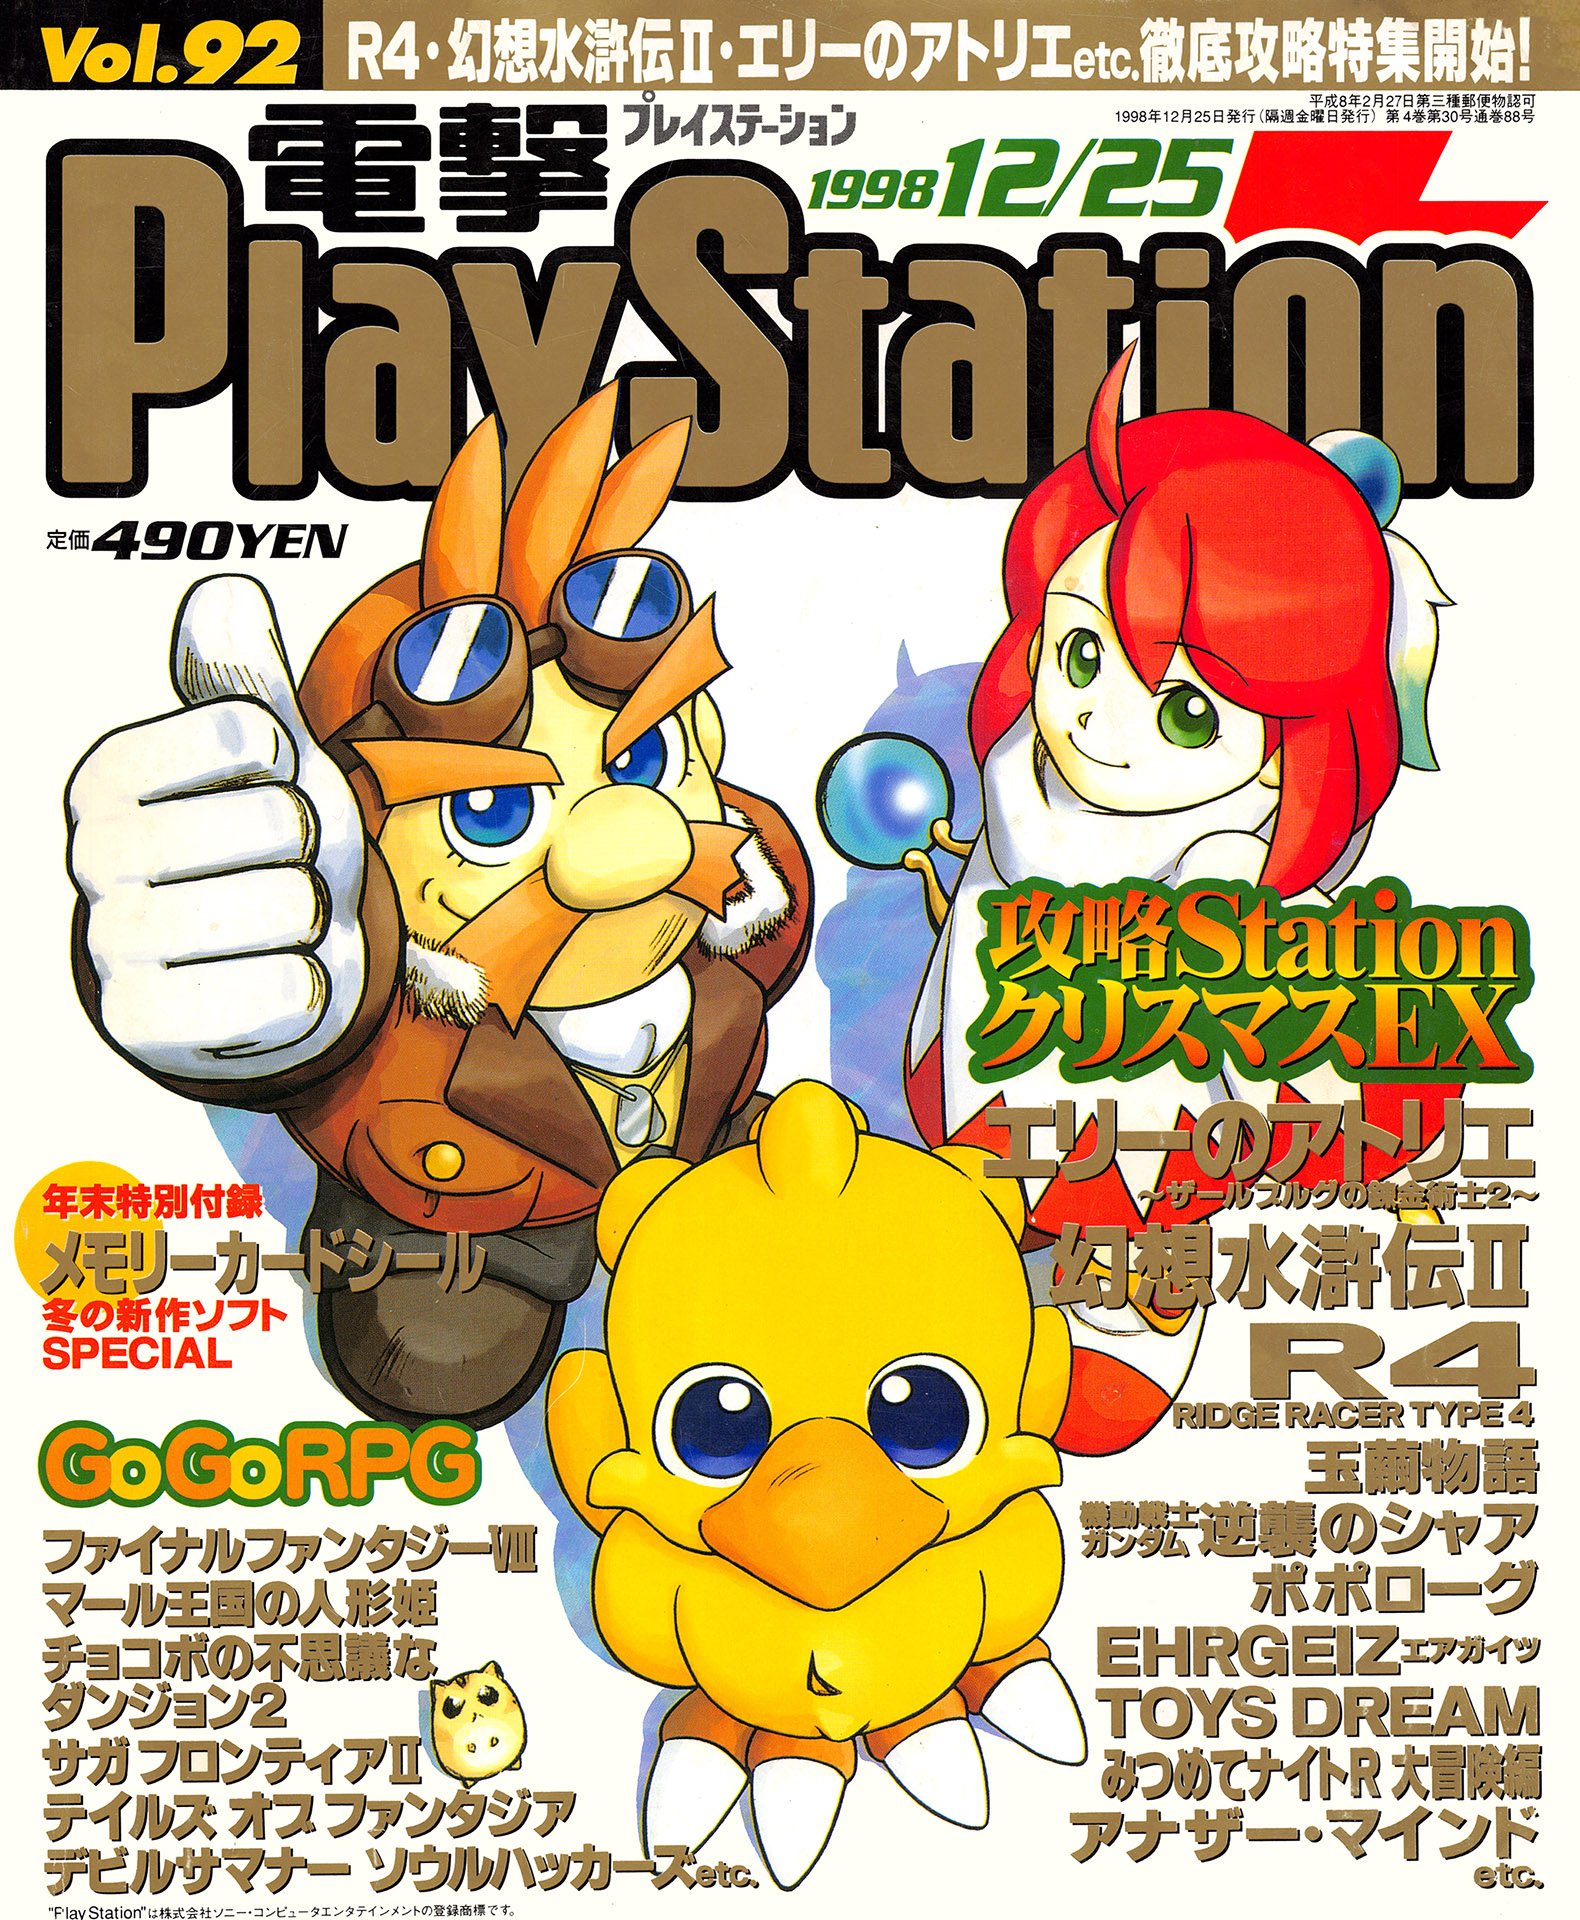 More information about "Dengeki PlayStation Vol.092 (December 25, 1998)"